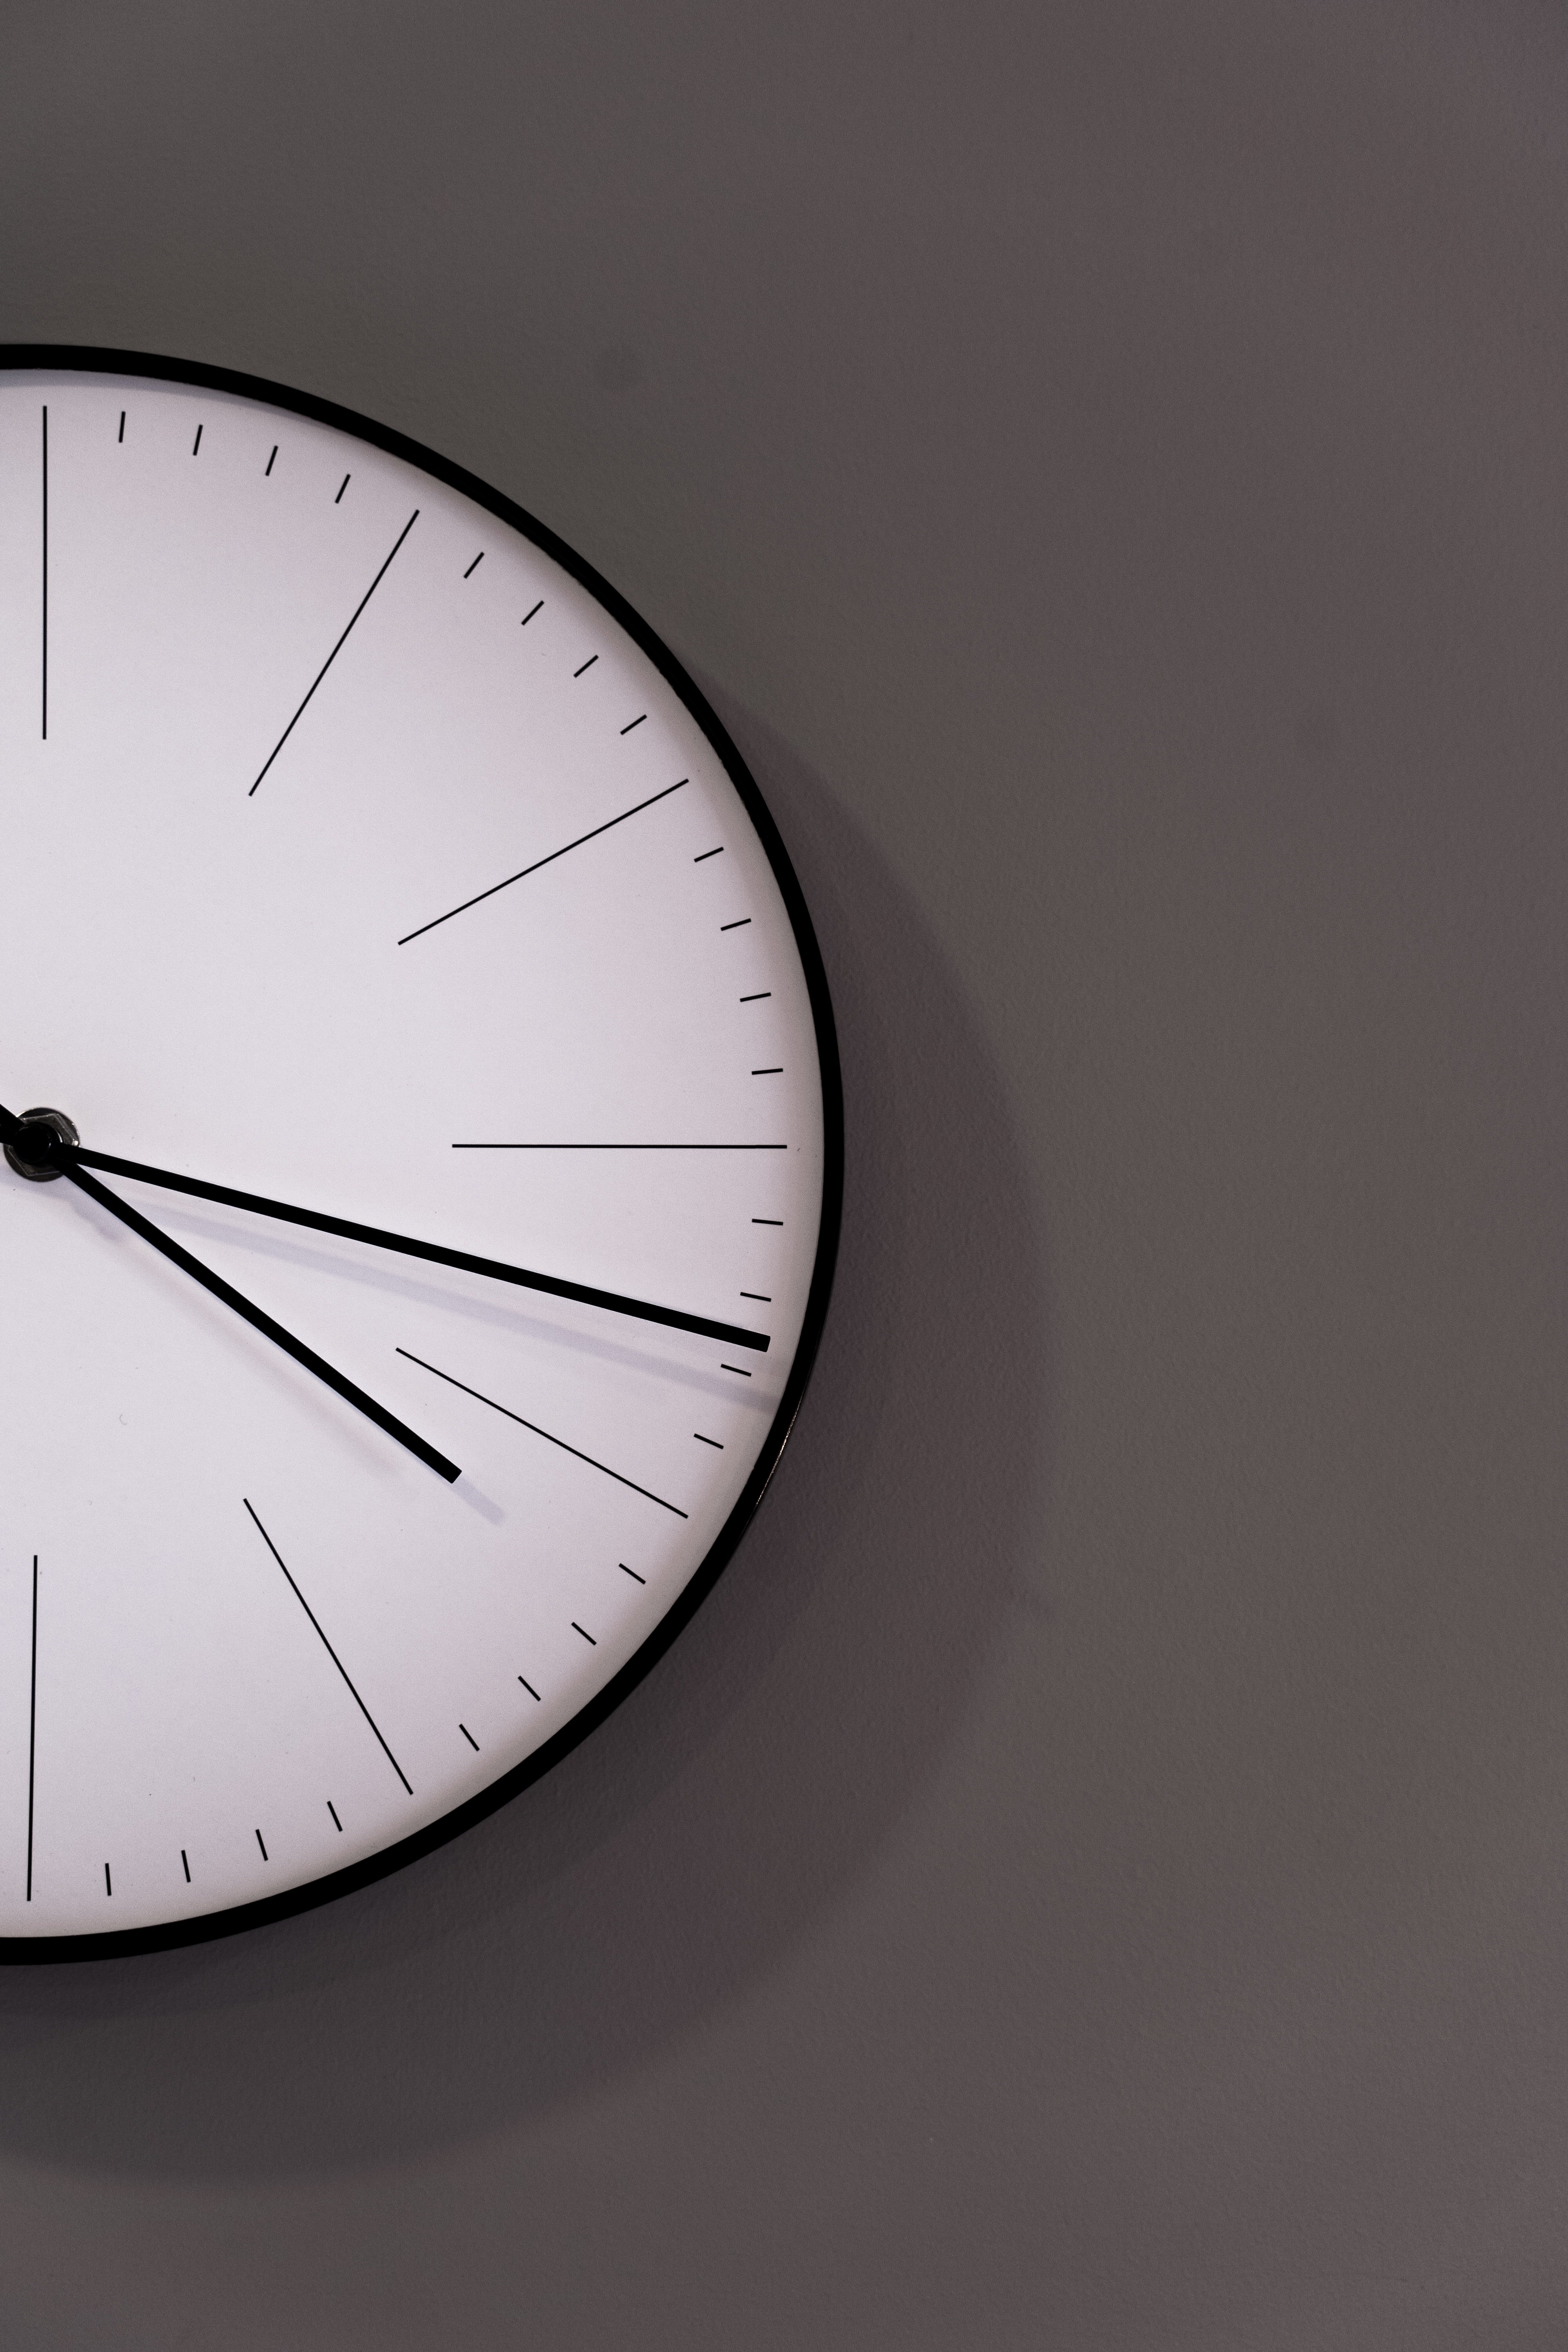 L’etern debat sobre el canvi d’hora: fins quan la canviarem?